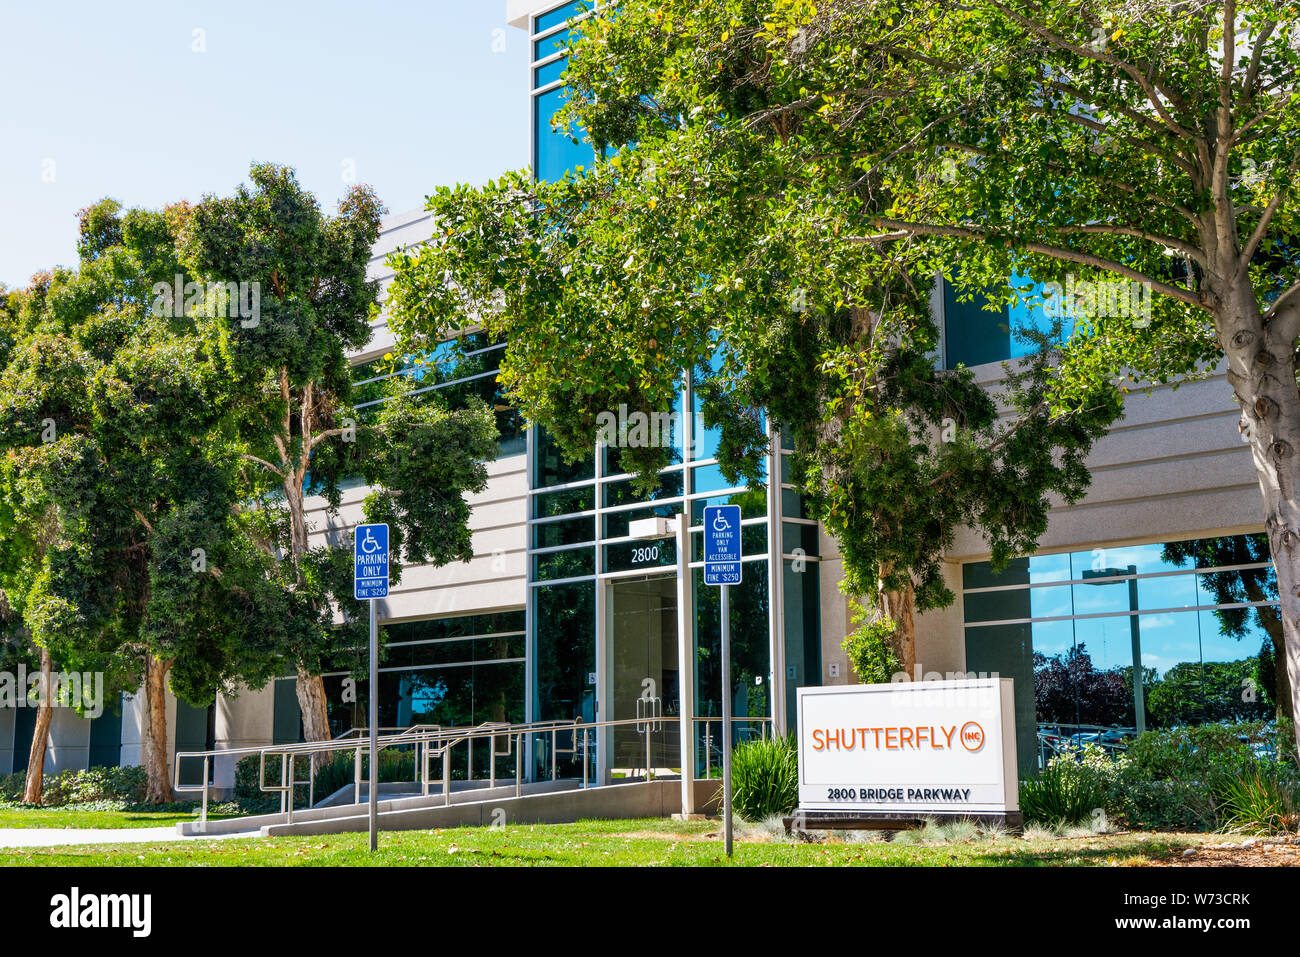 August 1, 2019 Redwood City/CA/USA - Shutterfly Hauptsitz im Silicon Valley; Shutterfly, Inc. ist eine US-amerikanische Internet-basierte Unternehmen spe Stockfoto